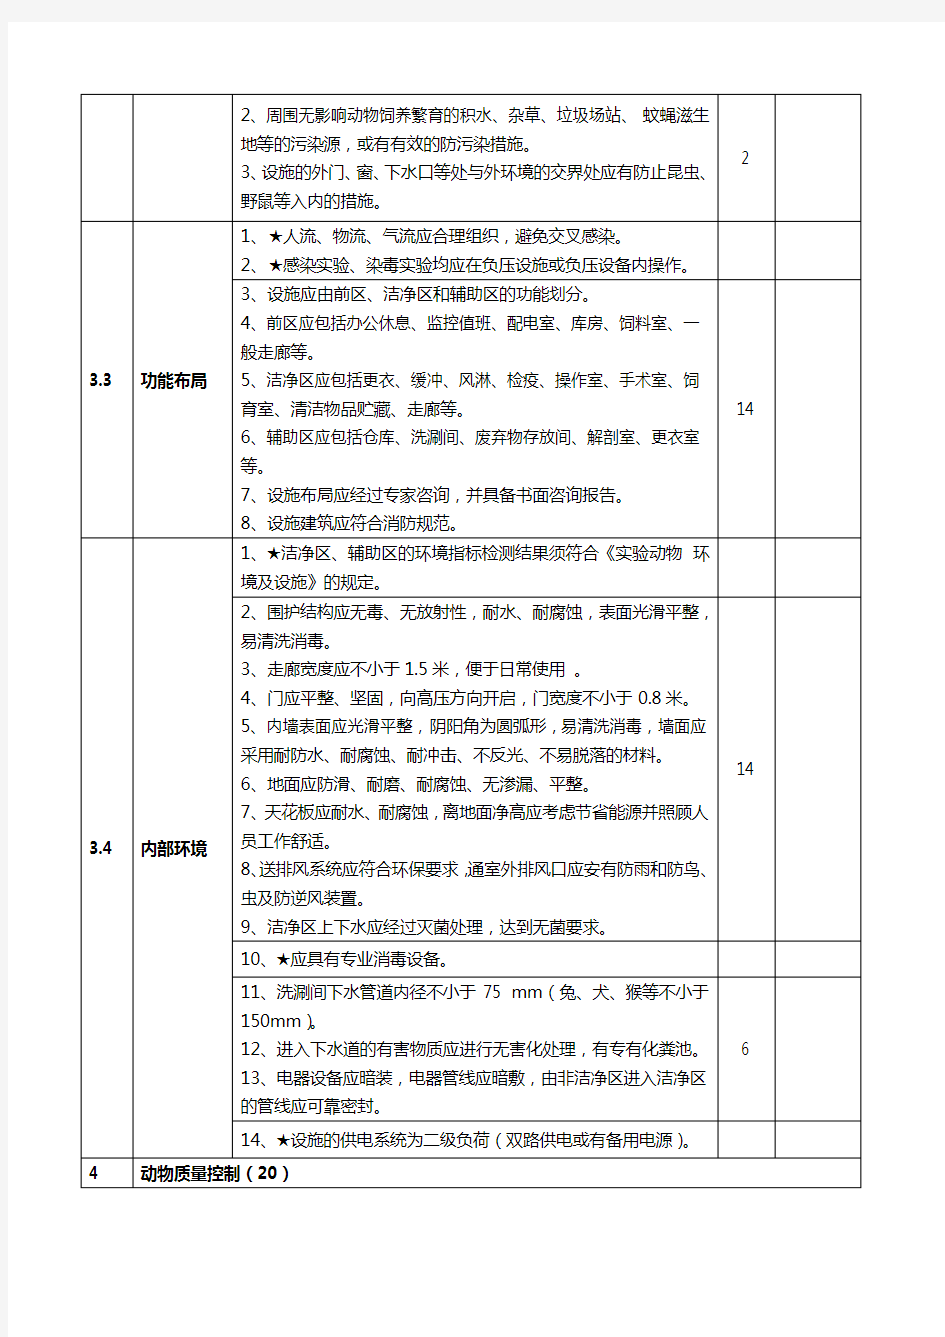 江苏省实验动物生产许可证申请现场考核表